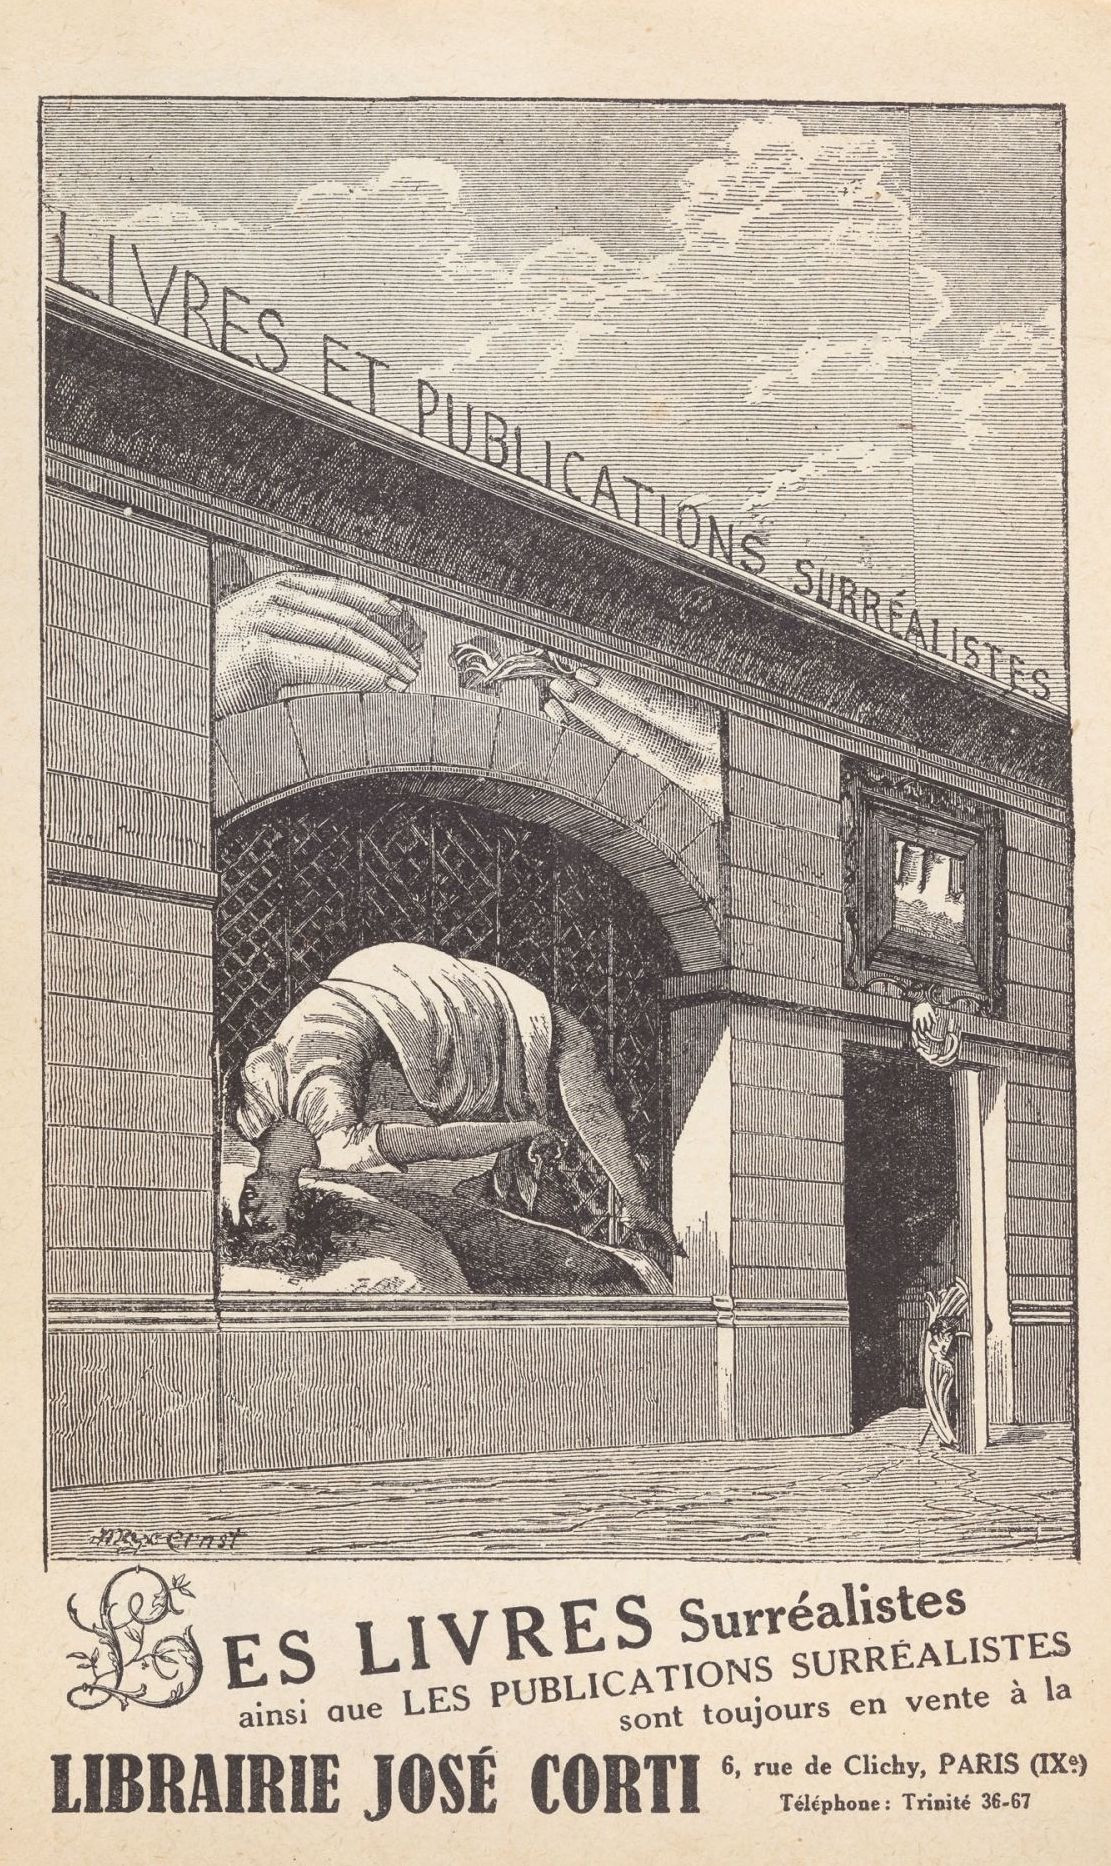 José Corti. Livres et publications surréalistes. 1931. Cover illustration by Max Ernst